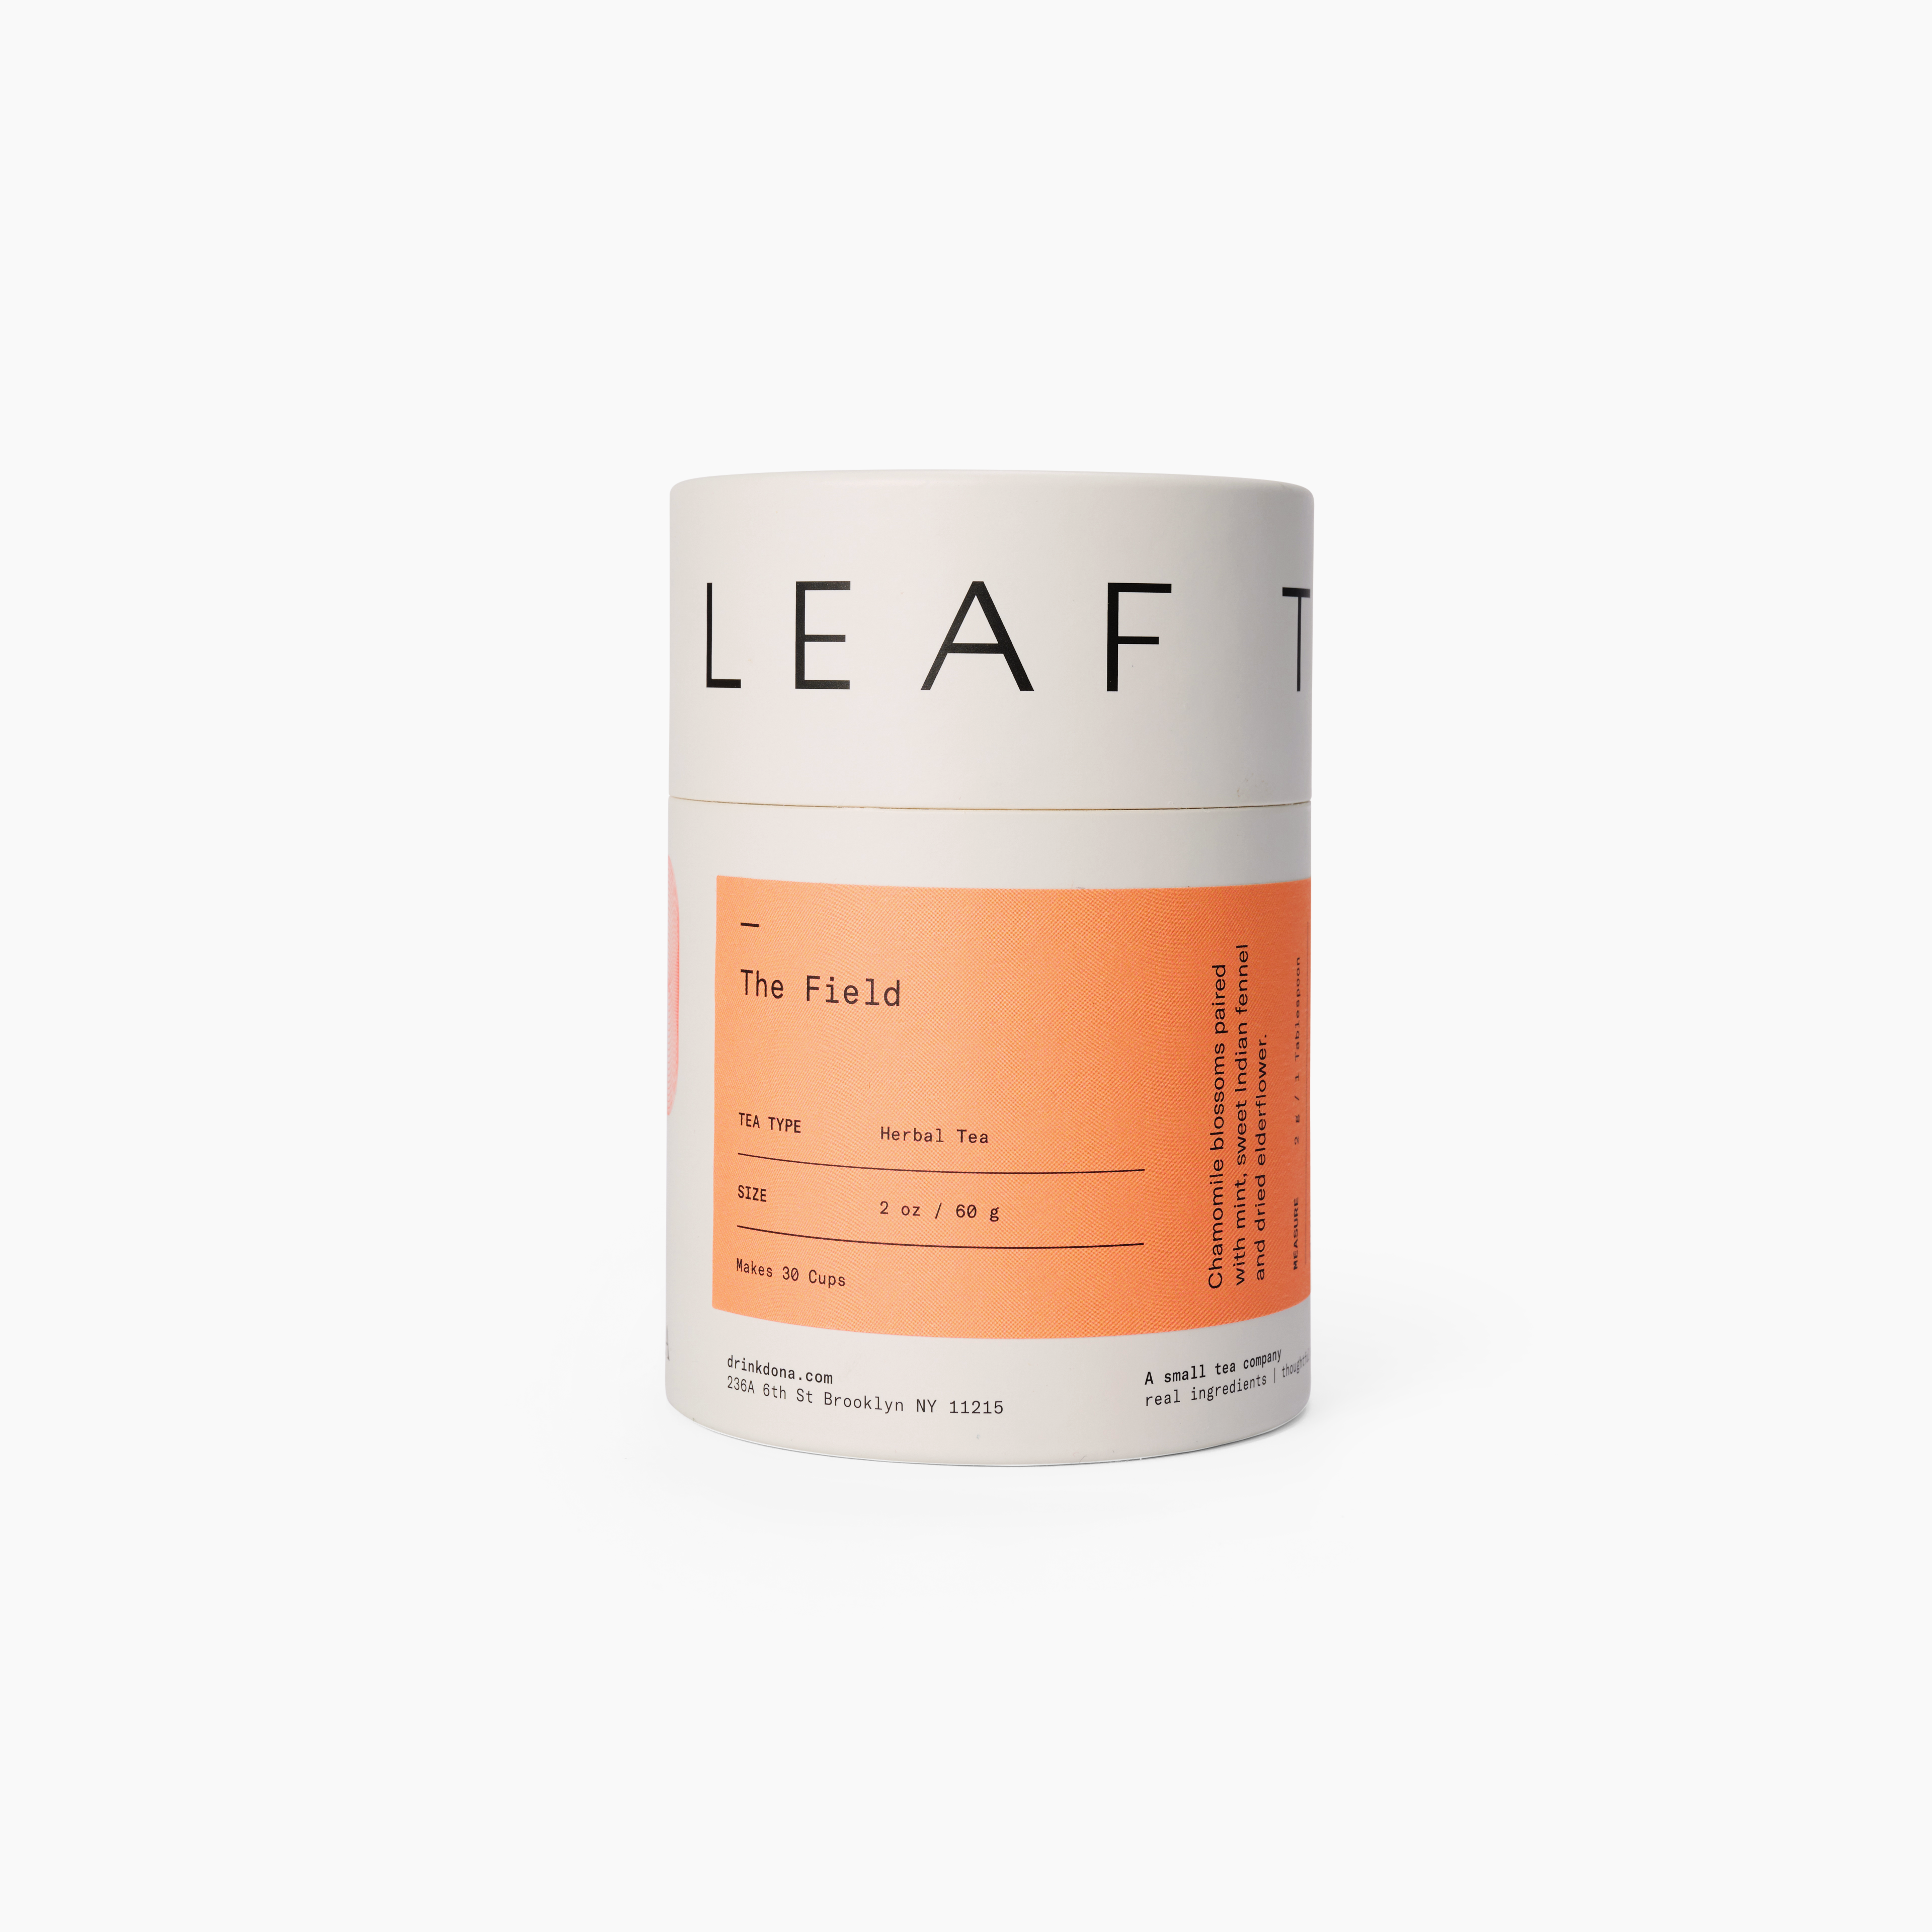 The Field Loose Leaf Herbal Tea